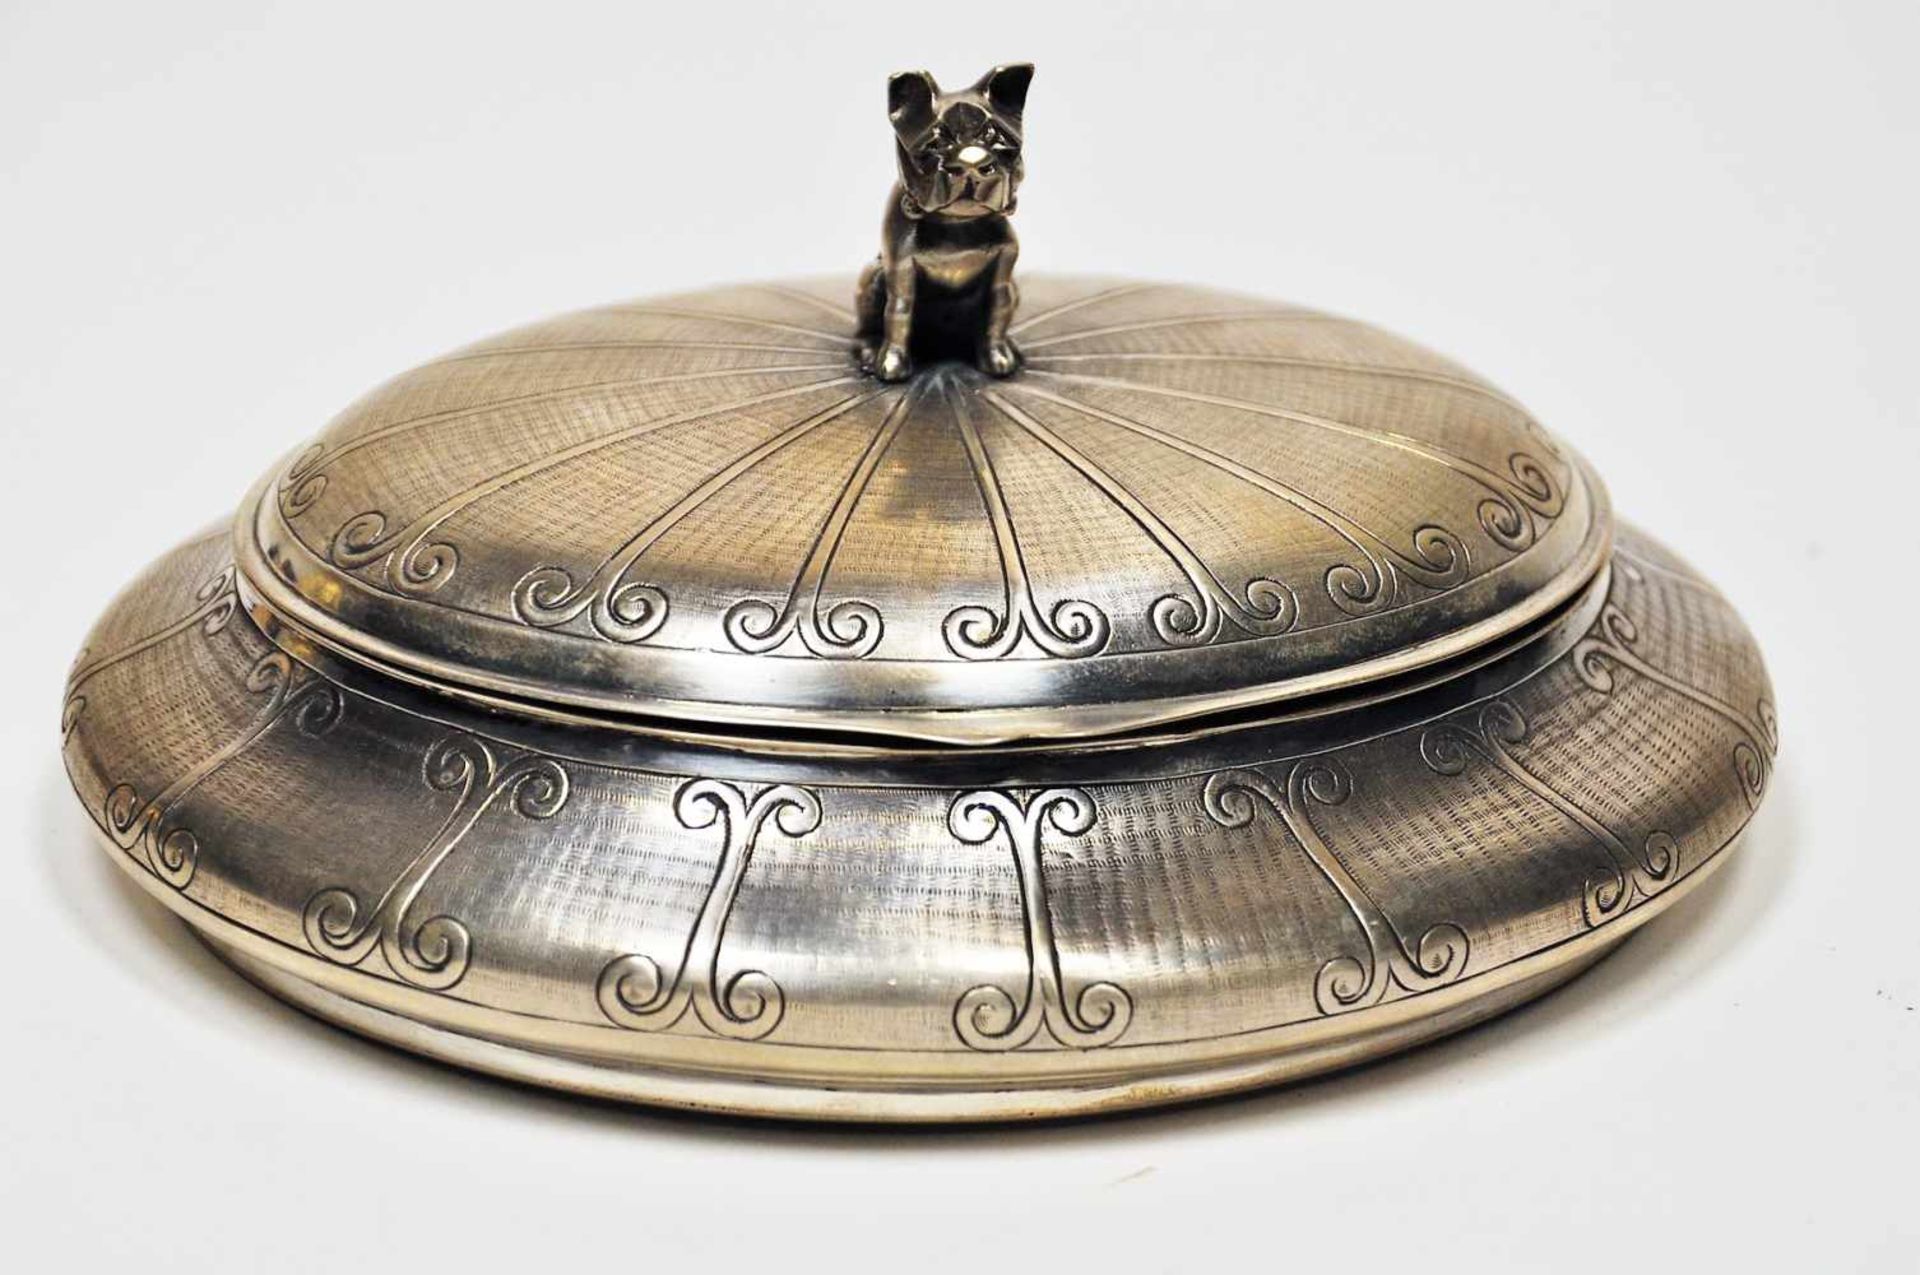 Zuckerdose mit Hund, Russland 20. Jhr.84 Silber, Meisterzeichen "BA", Gewicht 399 g